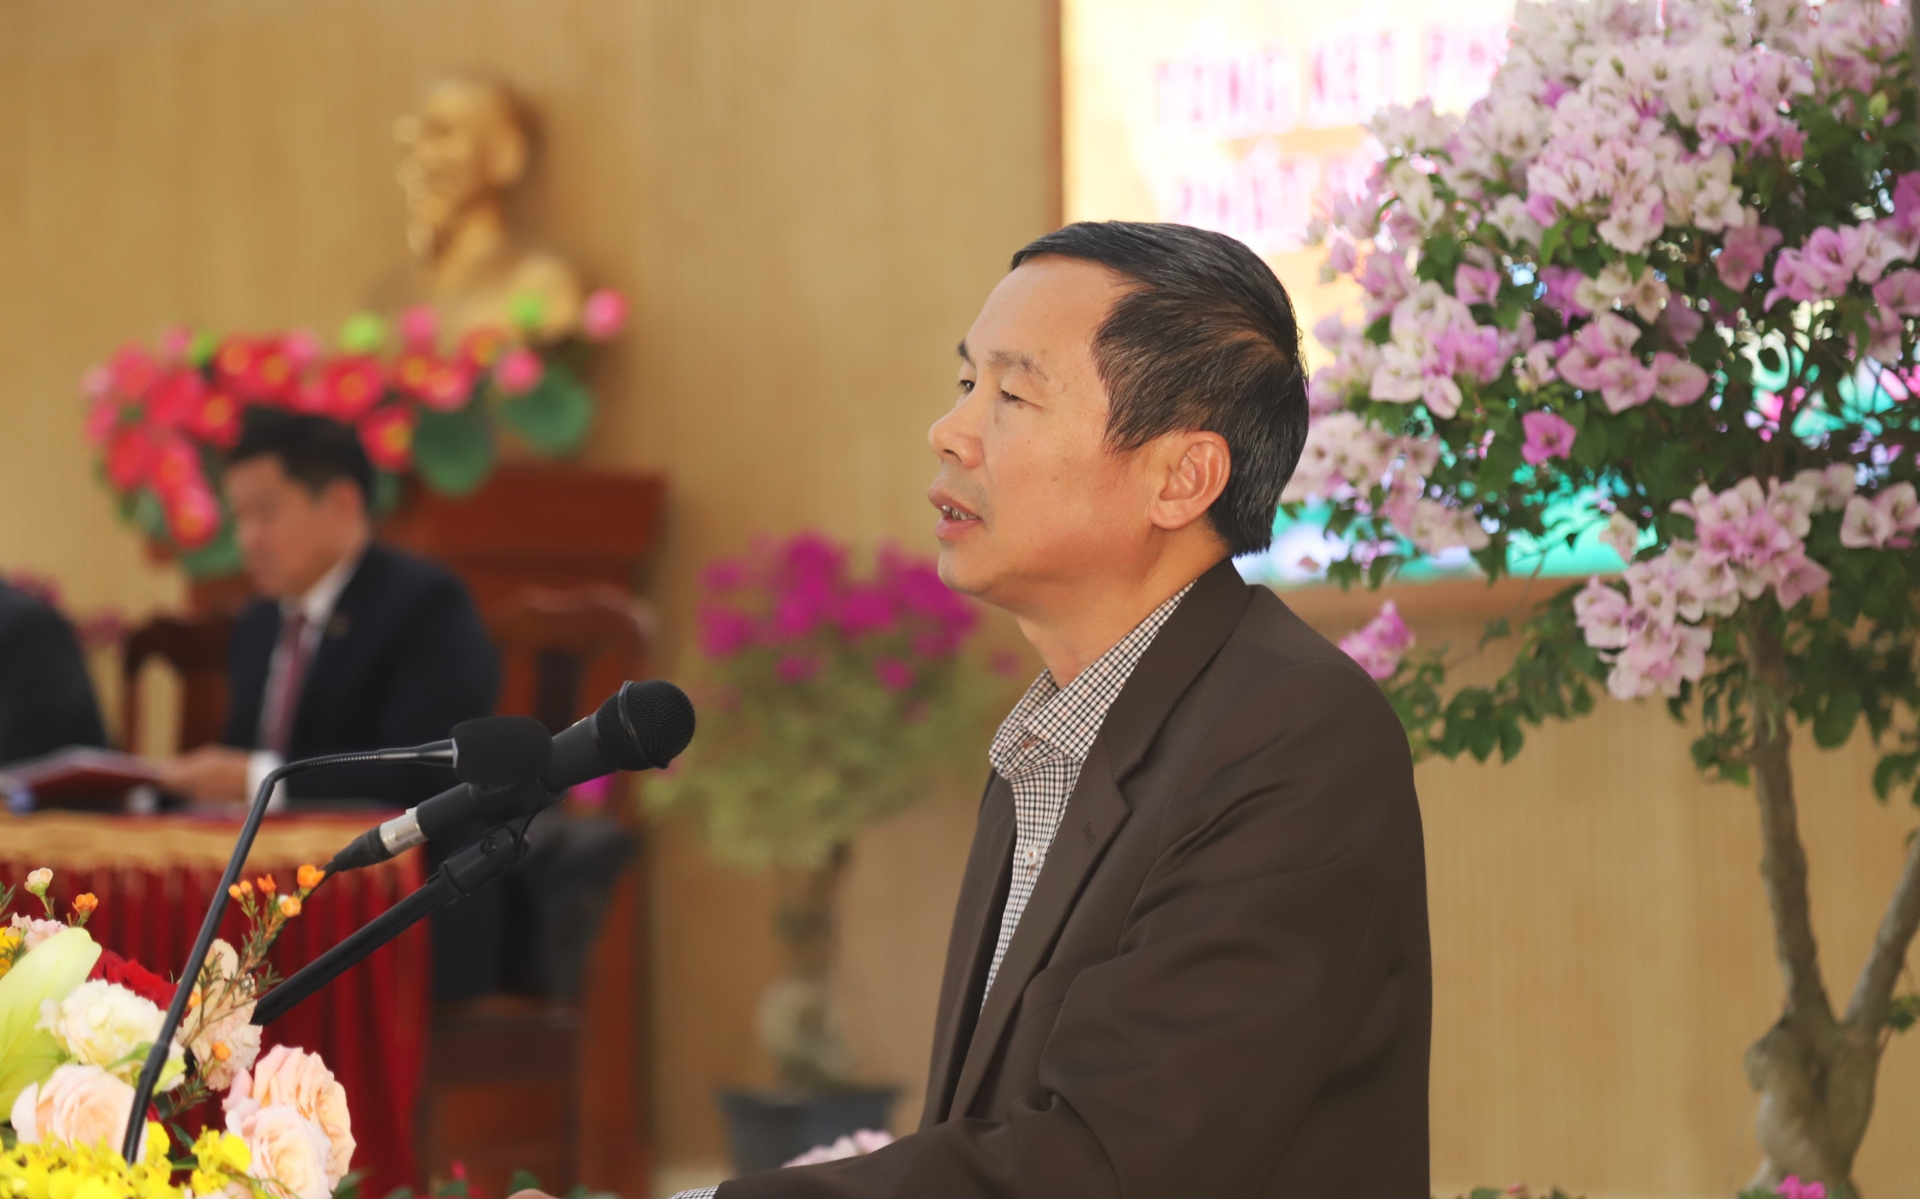 Đồng chí Đàm Minh Tuấn - Phó Giám đốc Sở Nội vụ, Phó ban Thường trực Ban Thi đua khen thưởng tỉnh Lâm Đồng phát biểu tại hội nghị